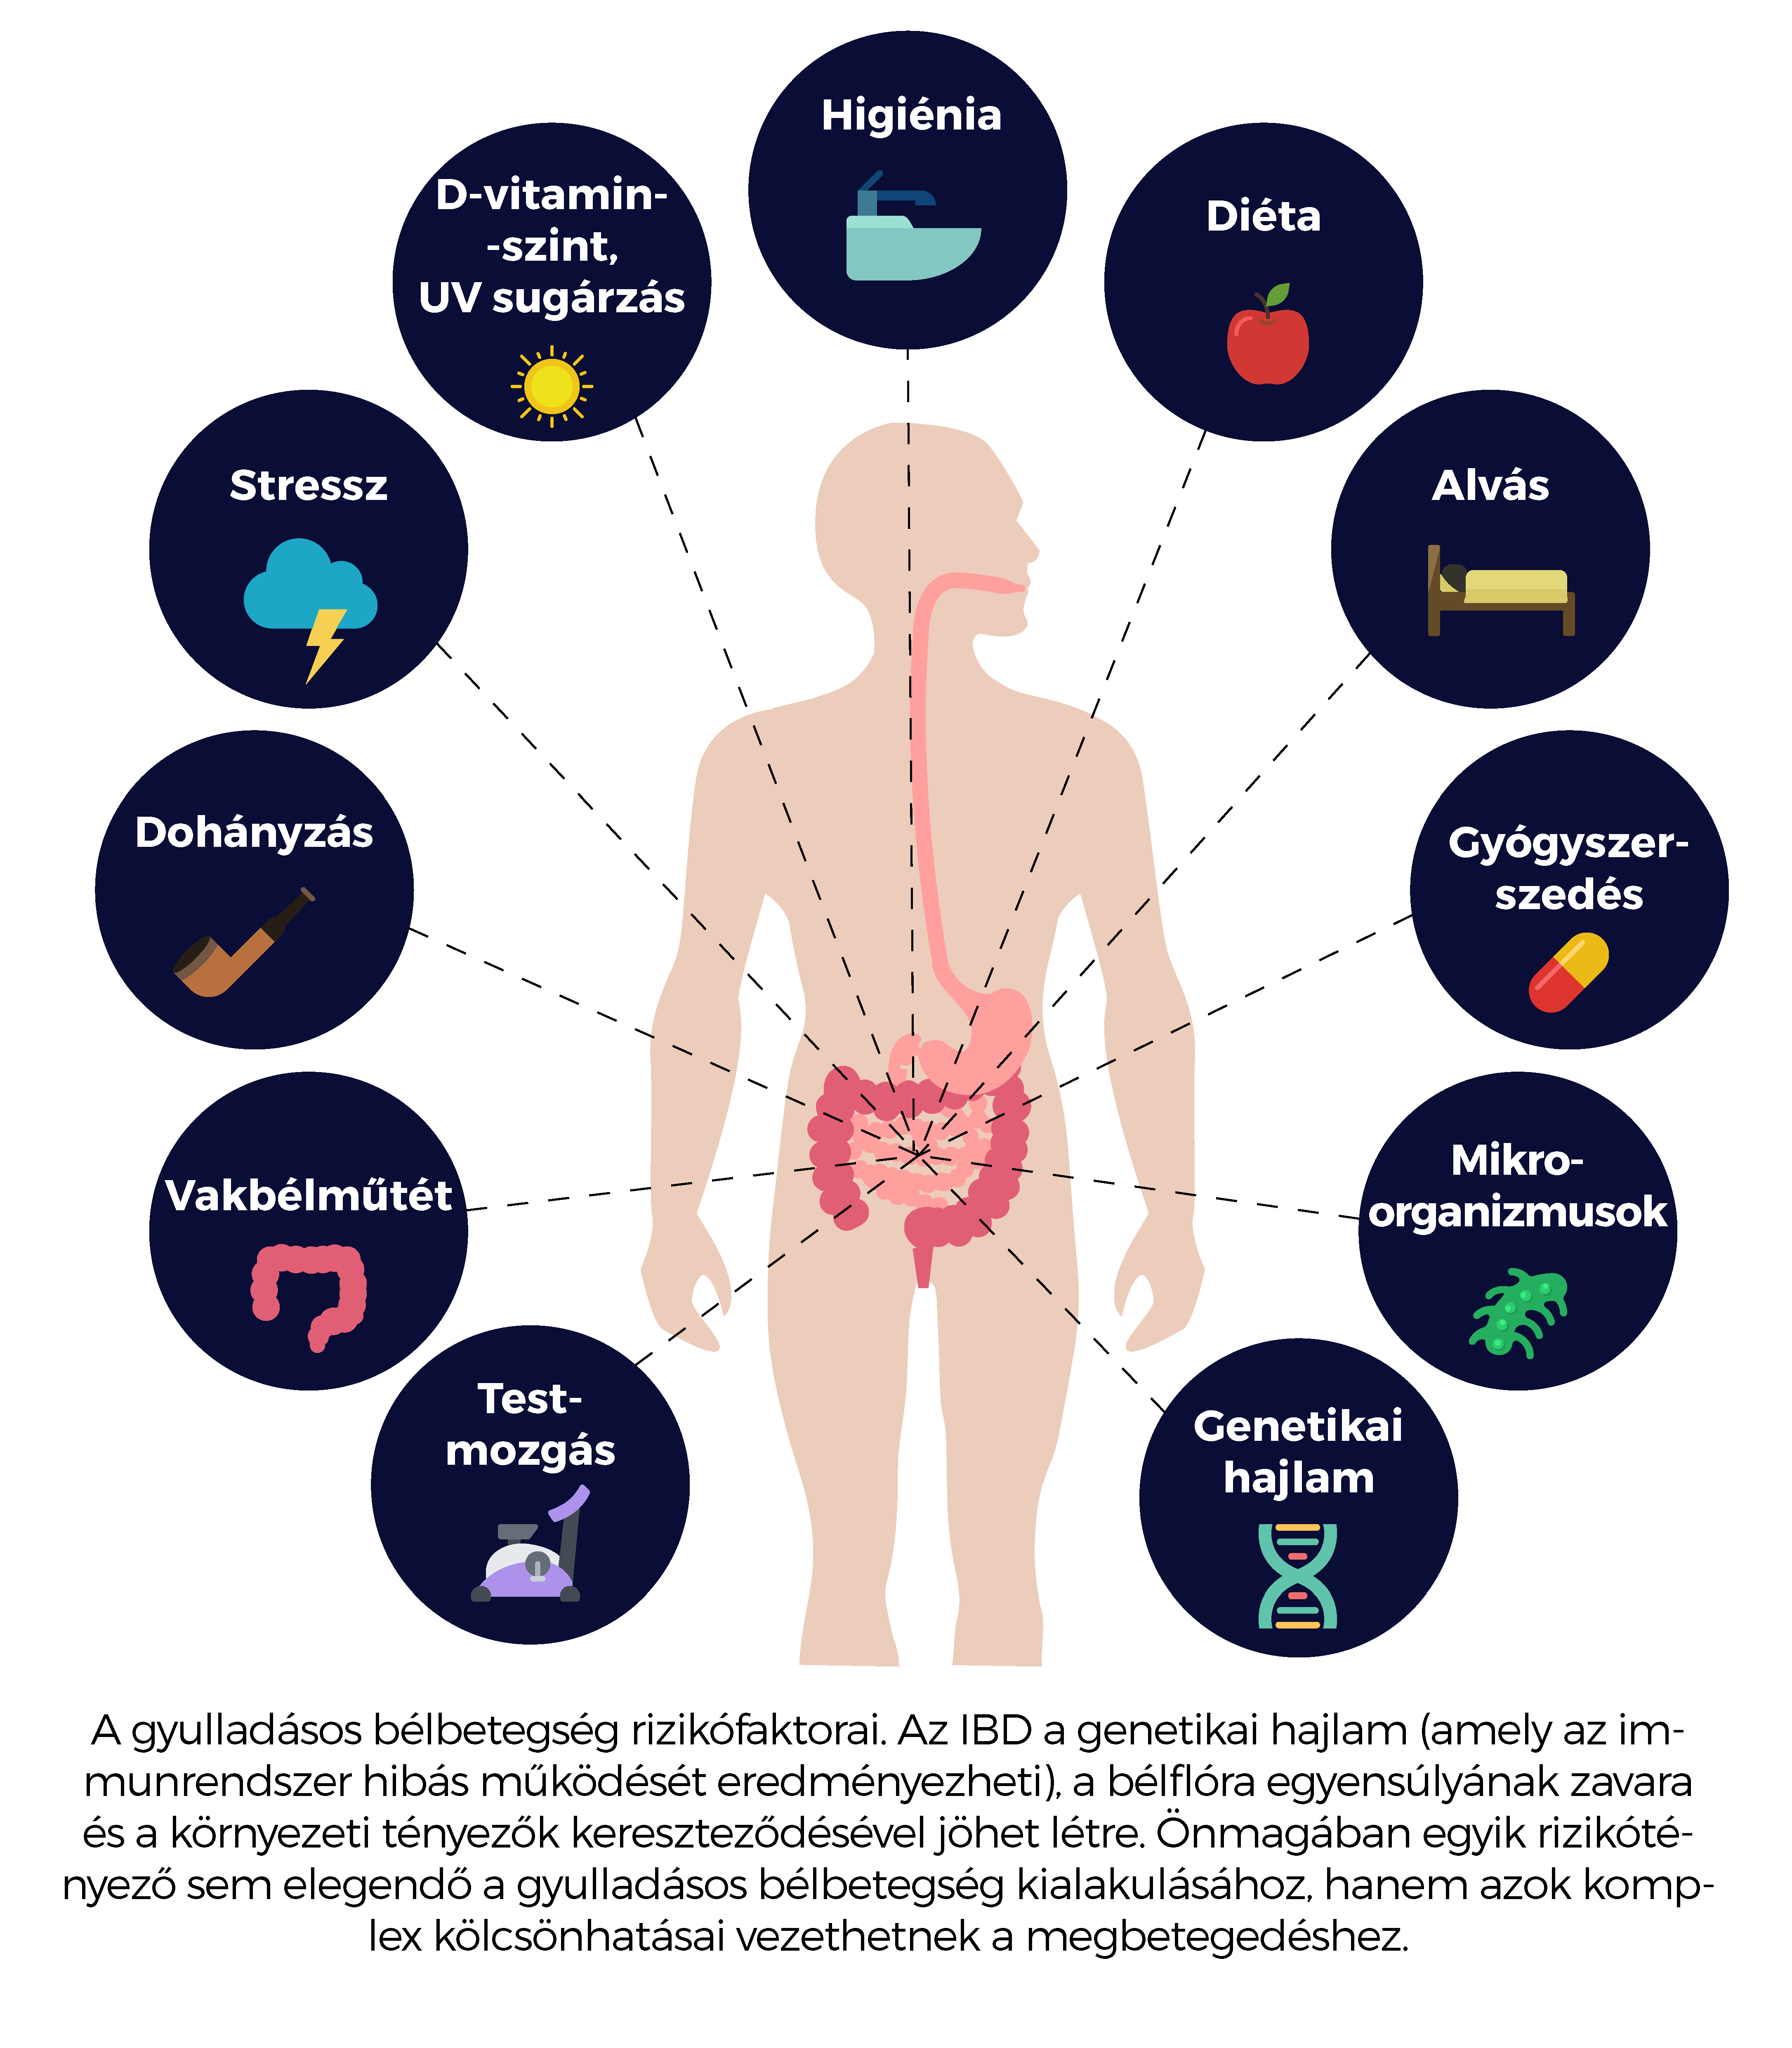 Gyulladásos bélbetegségek: a Crohn-betegség és a colitis ulcerosa